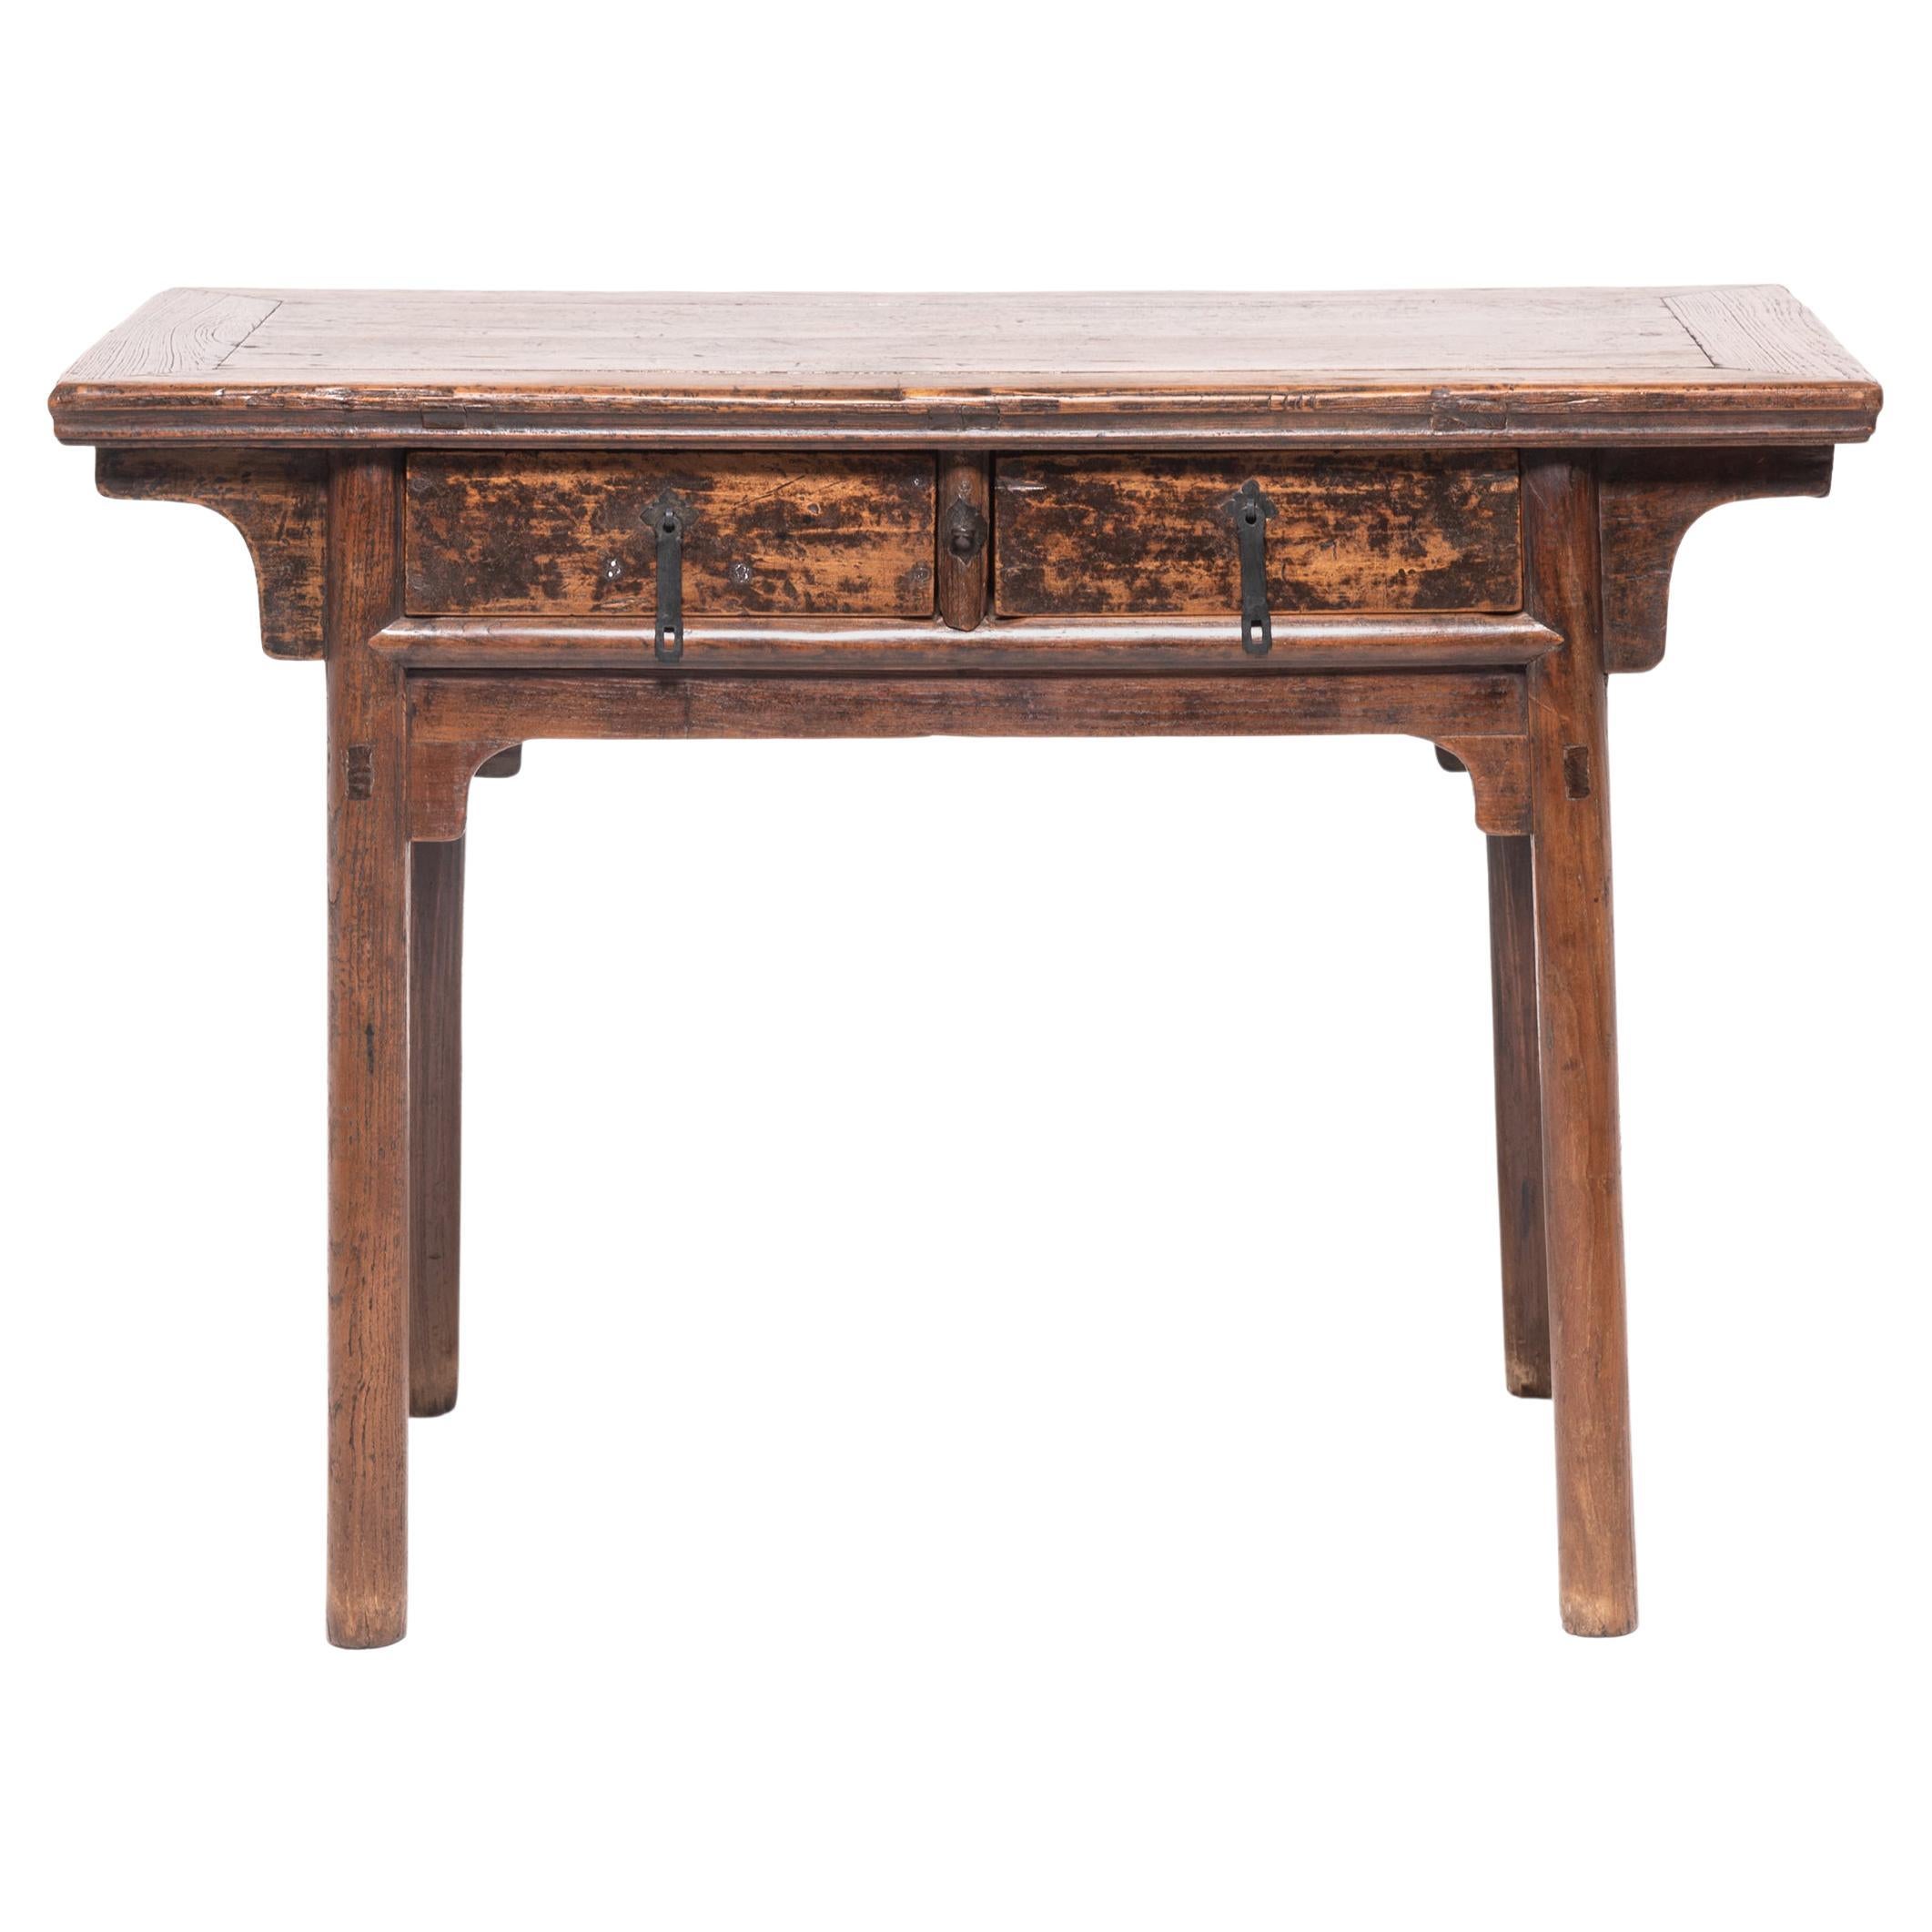 Chinesischer Provinzial-Tisch mit zwei Schubladen, um 1800